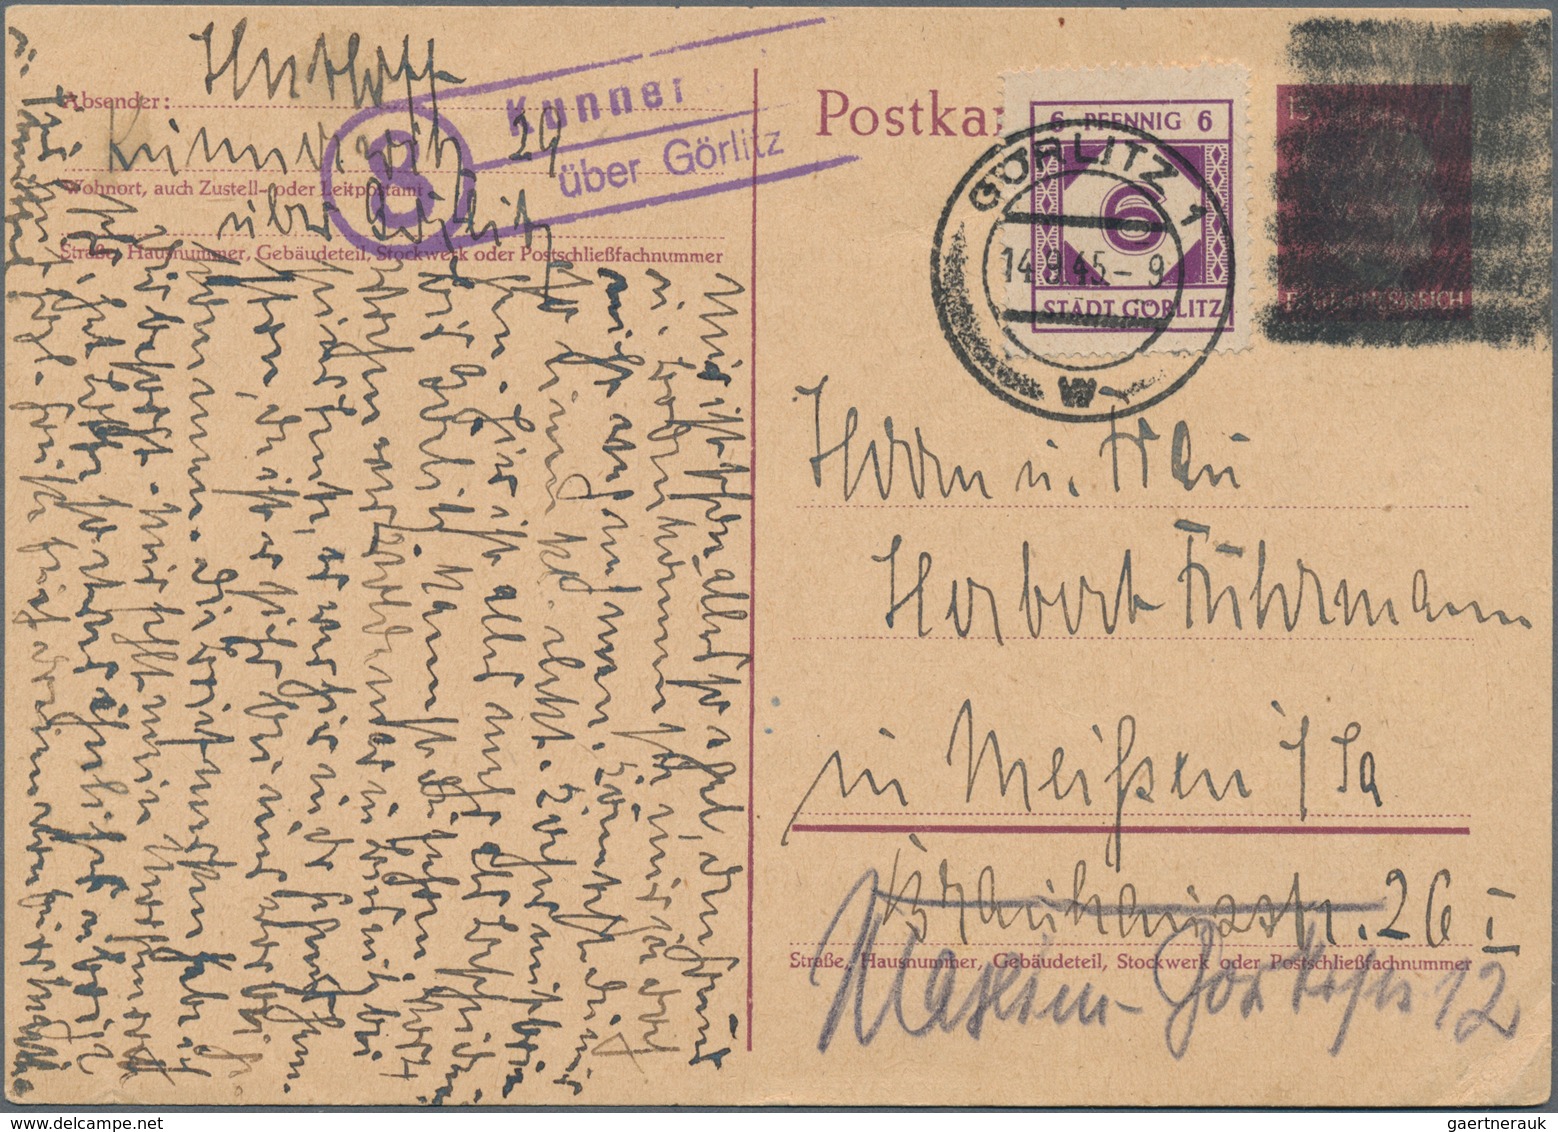 Deutsche Lokalausgaben ab 1945: GÖRLITZ: 1945/1948, Partie von zehn Bedarfs-Briefen/Karten, dabei ei